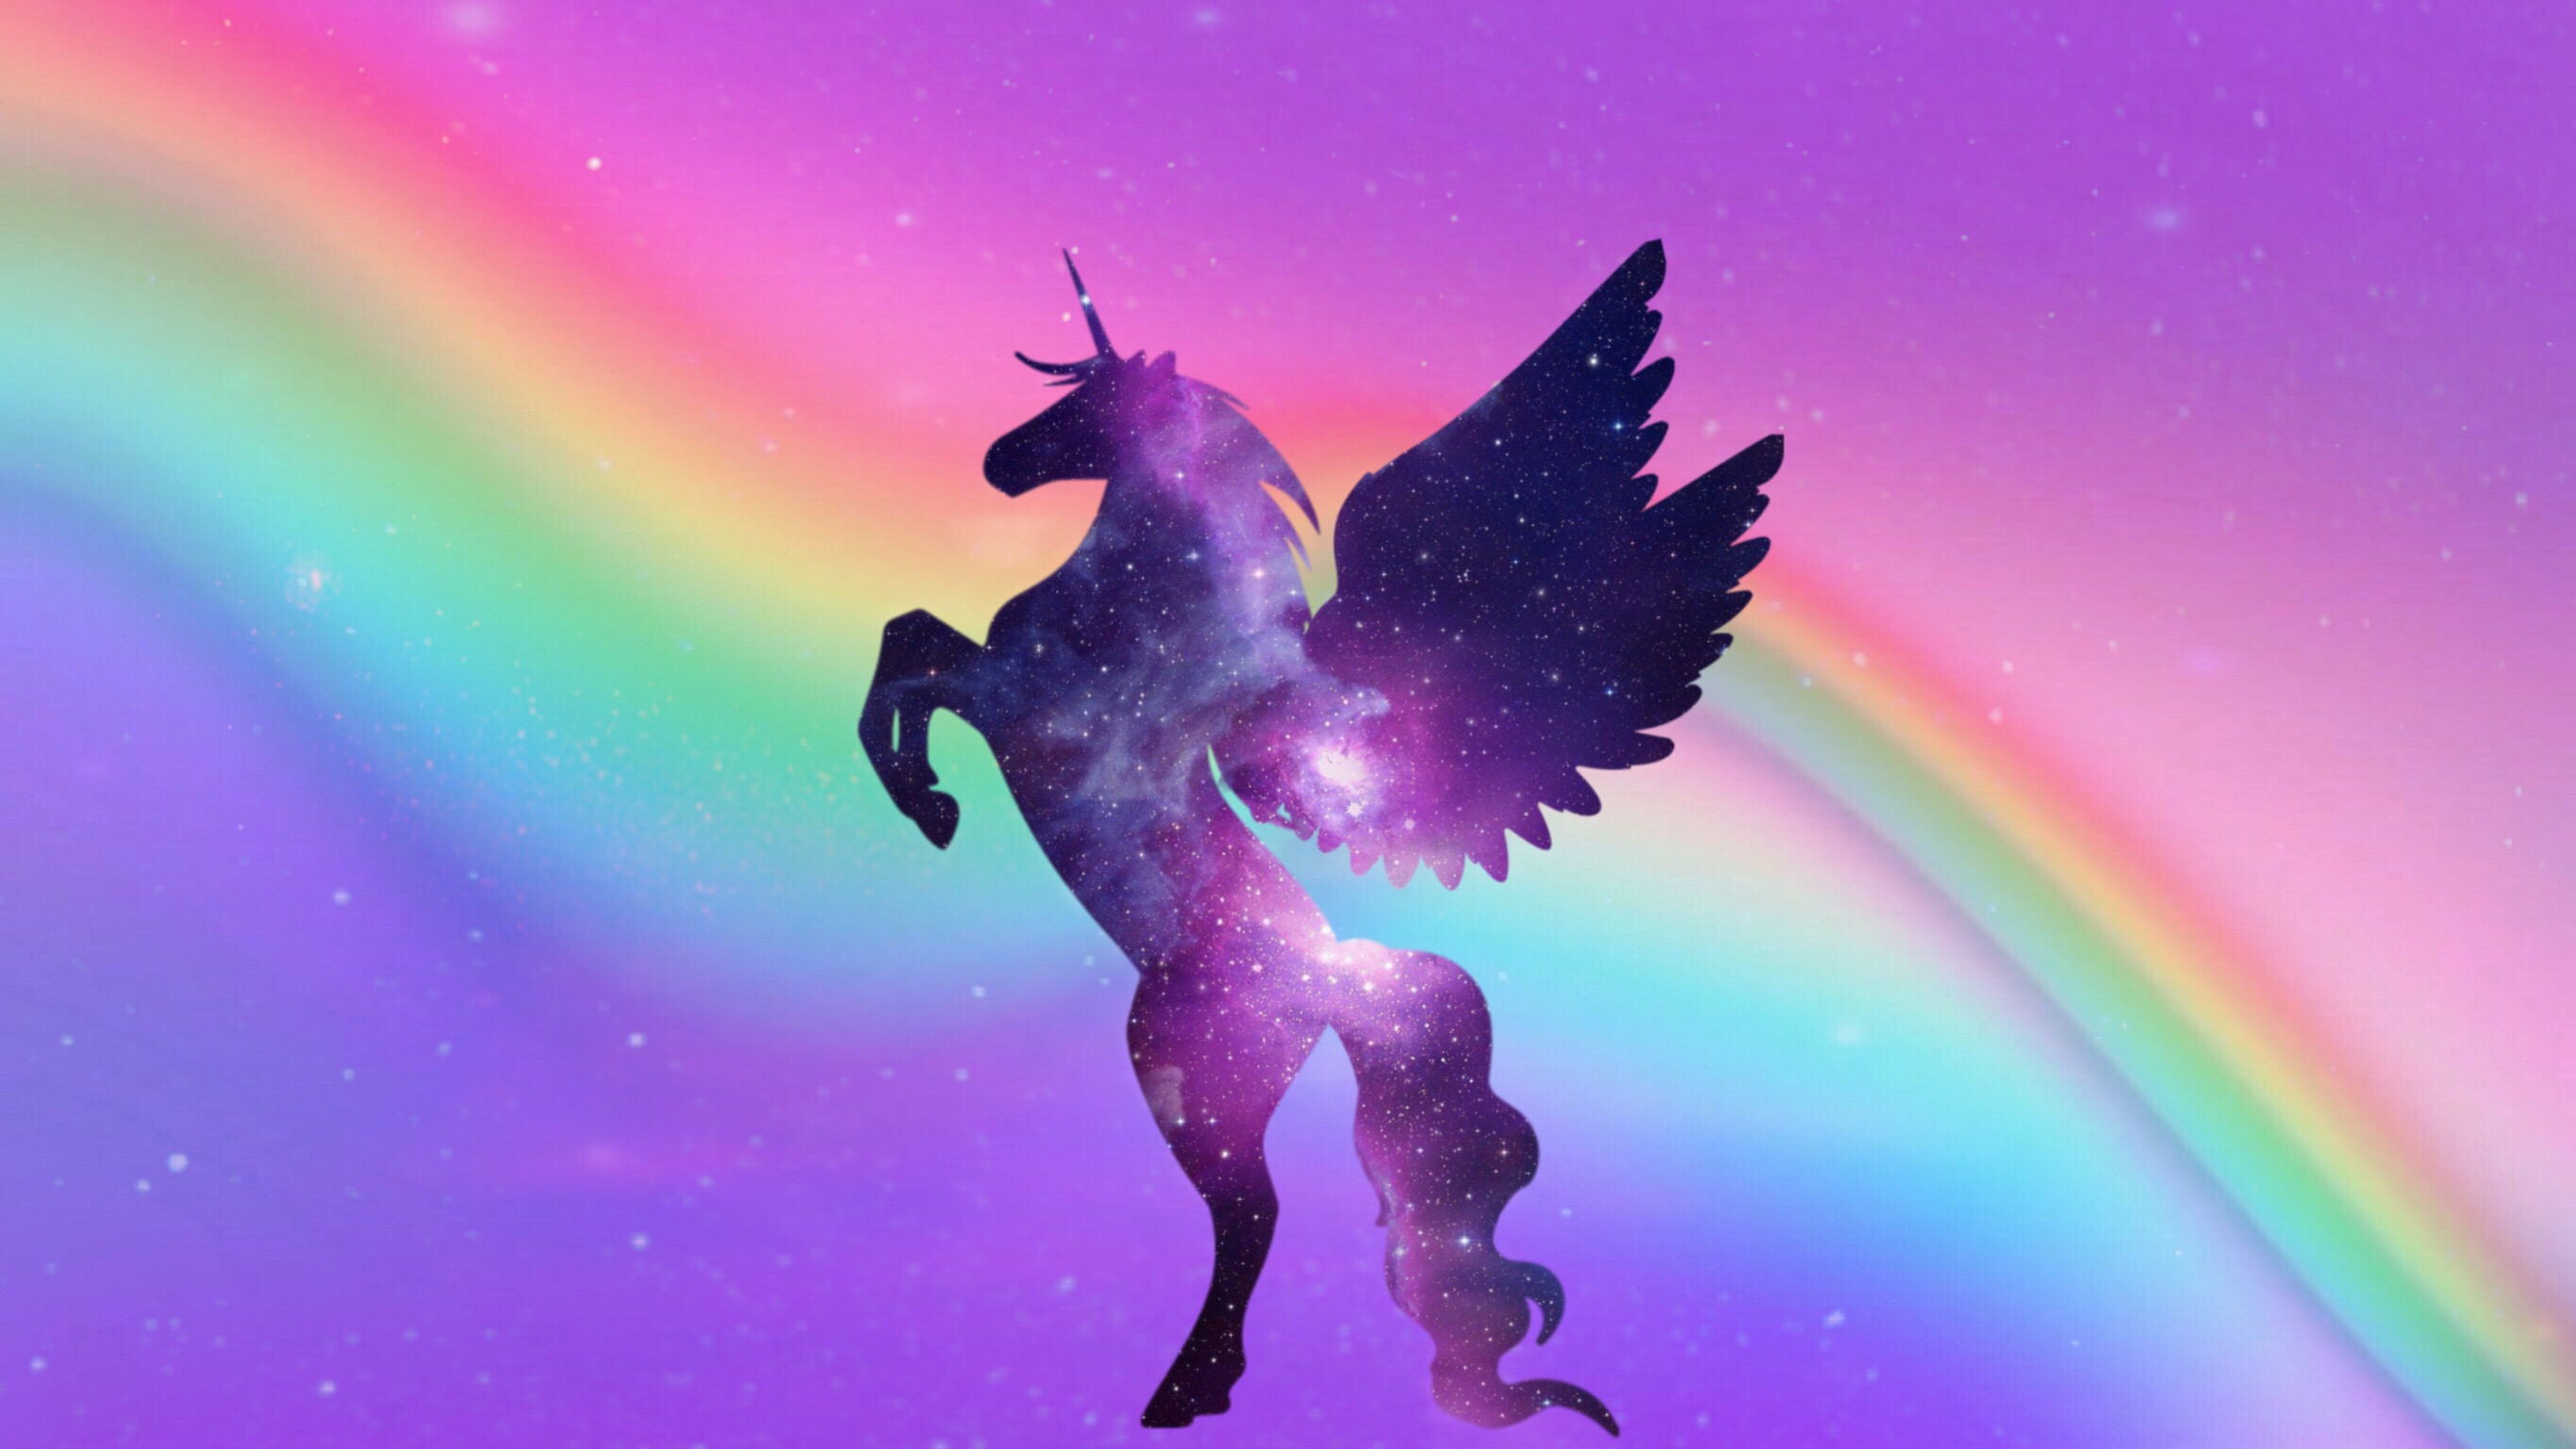 unicorn freetoedit #unicorn image by @emilelavezzari2